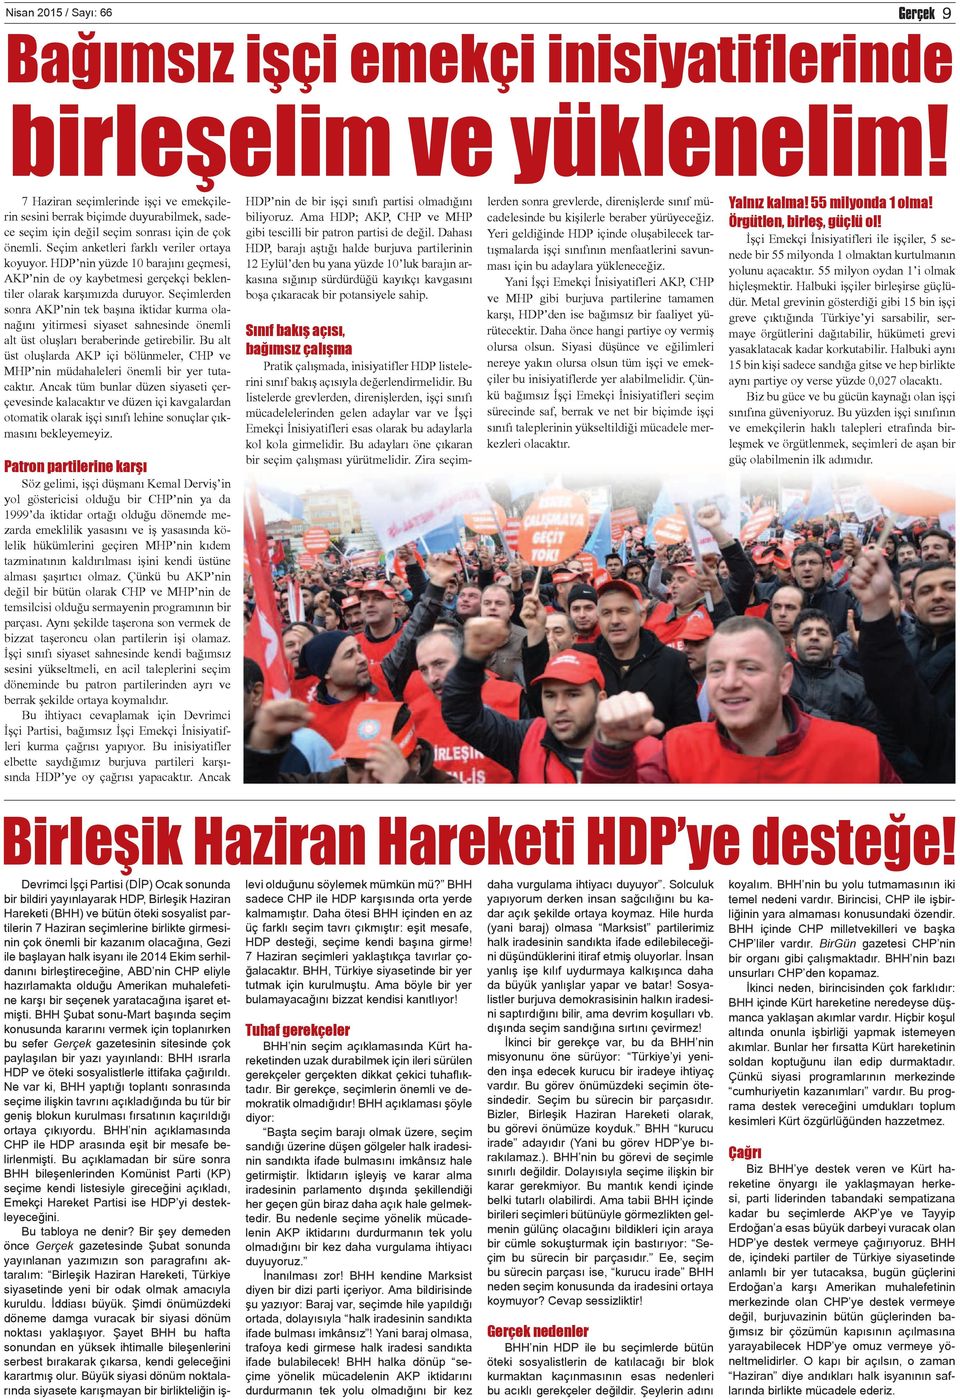 HDP nin yüzde 10 barajını geçmesi, AKP nin de oy kaybetmesi gerçekçi beklentiler olarak karşımızda duruyor.